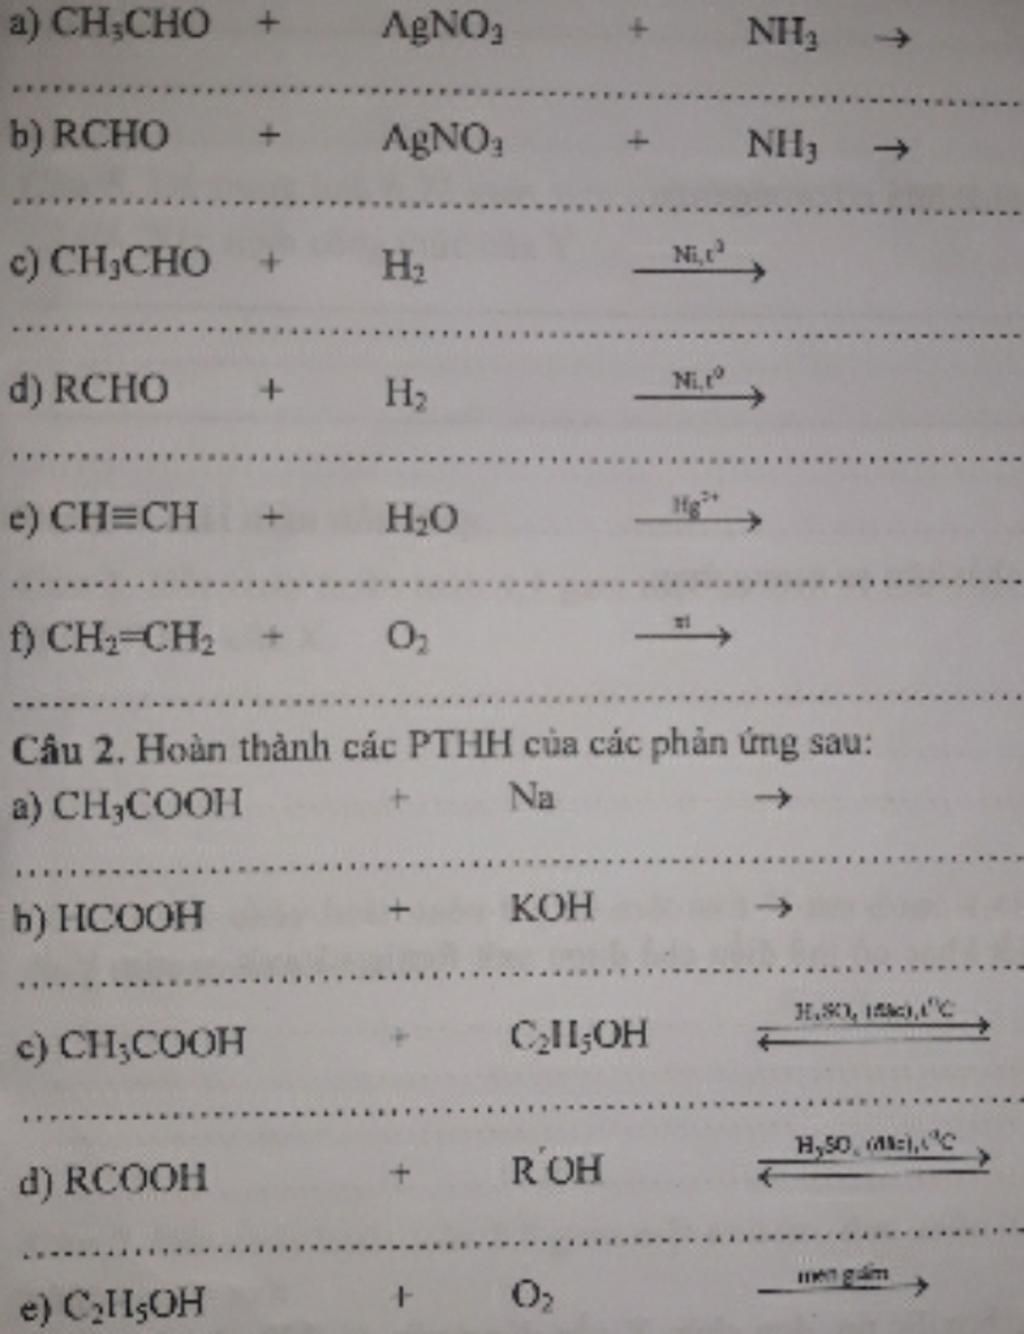 Phương trình phản ứng giữa rcho + agno3 + nh3 và ứng dụng trong cuộc sống